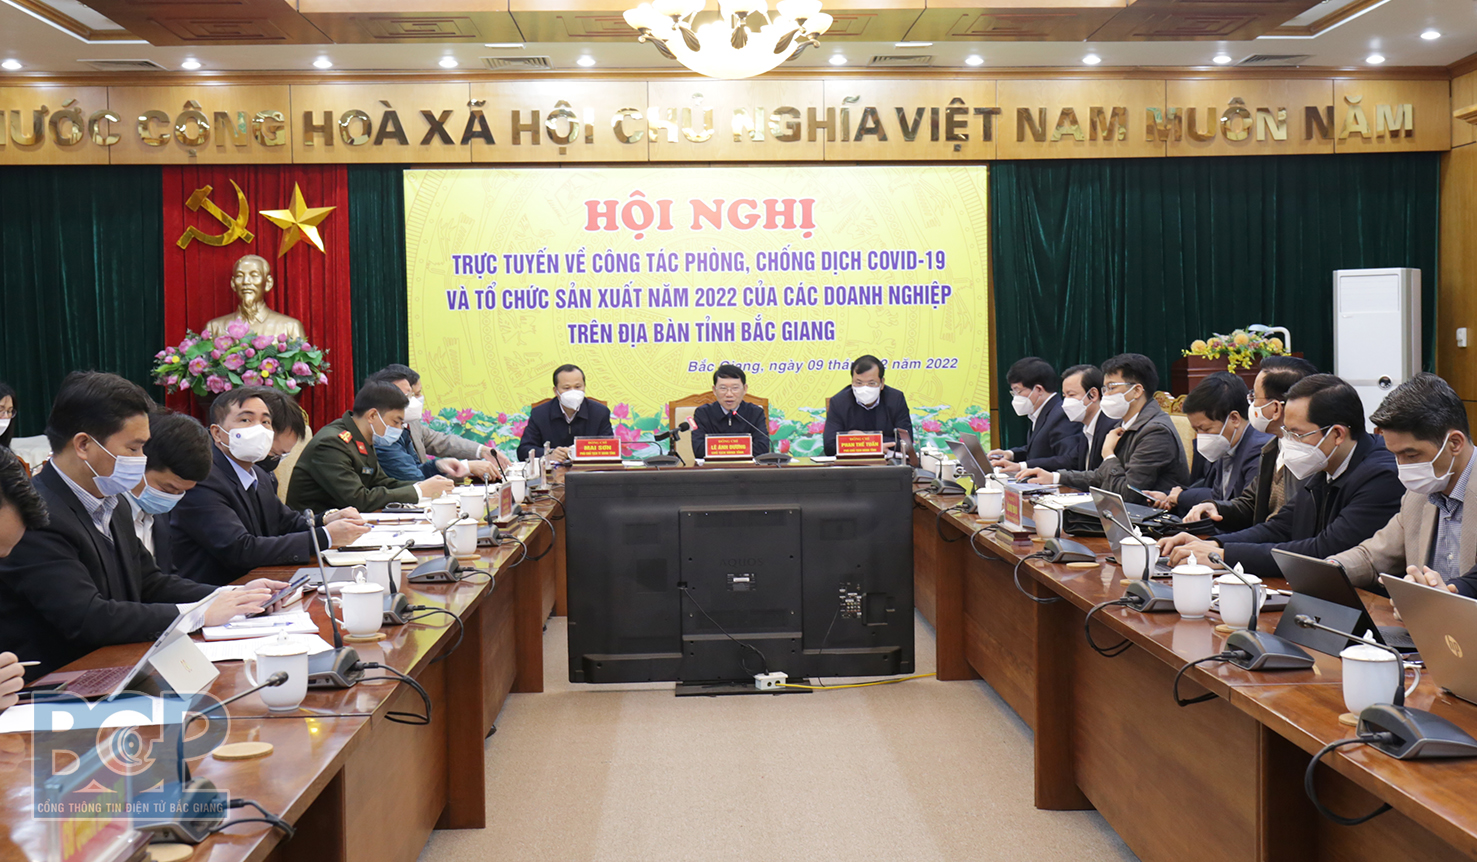 Bắc Giang: Tổ chức hội nghị trực tuyến về công tác phòng, chống dịch Covid-19 và tổ chức sản xuất...